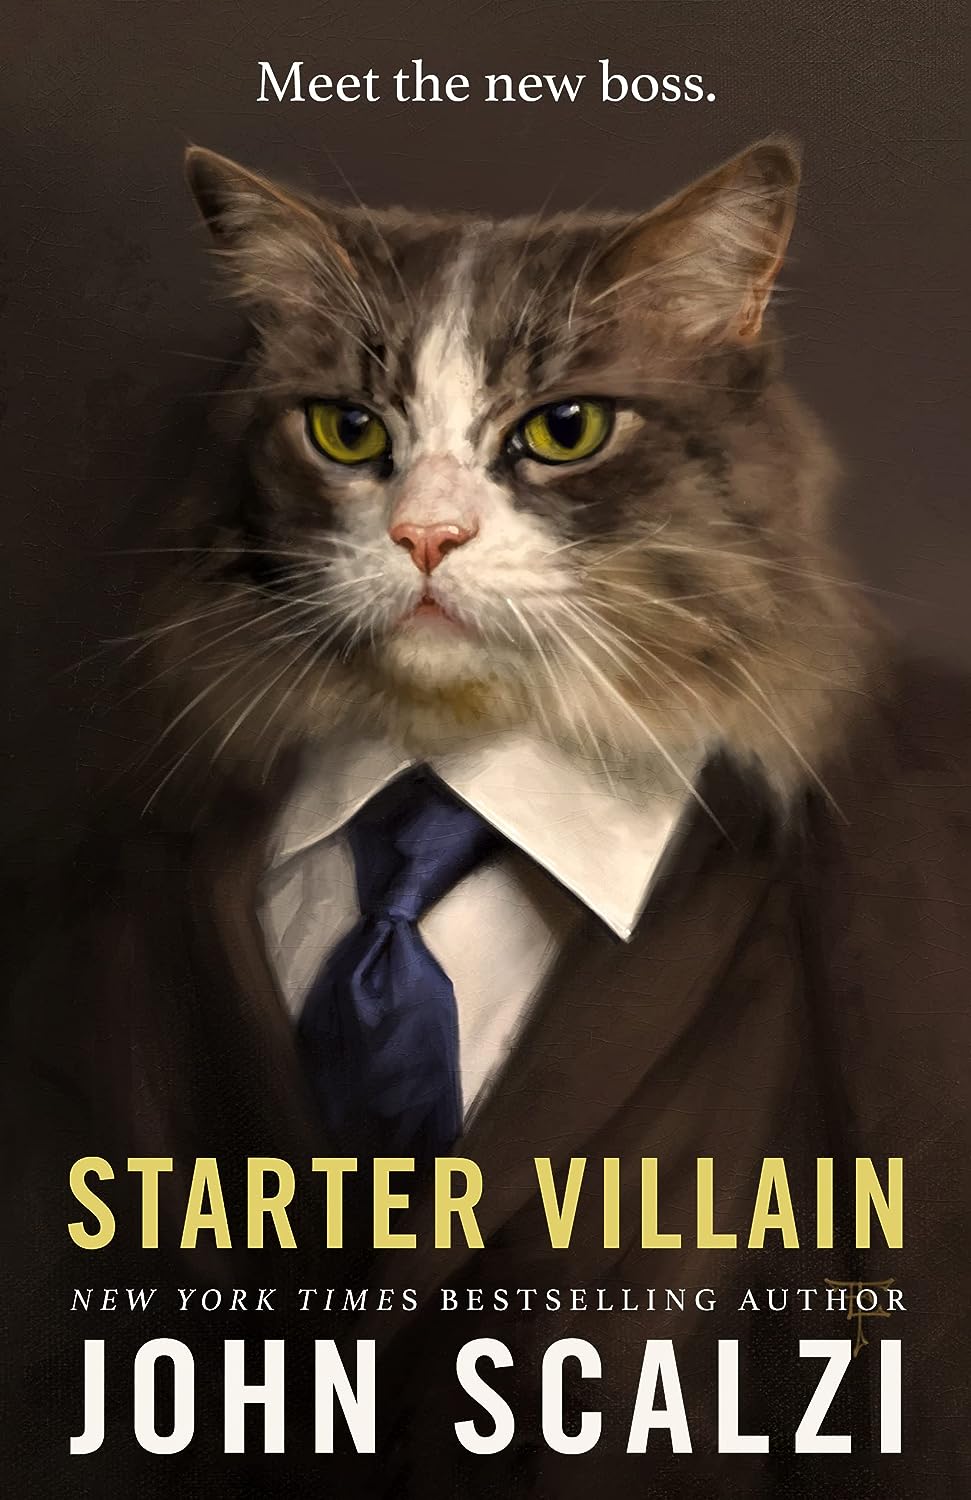 Image for "Starter Villain"